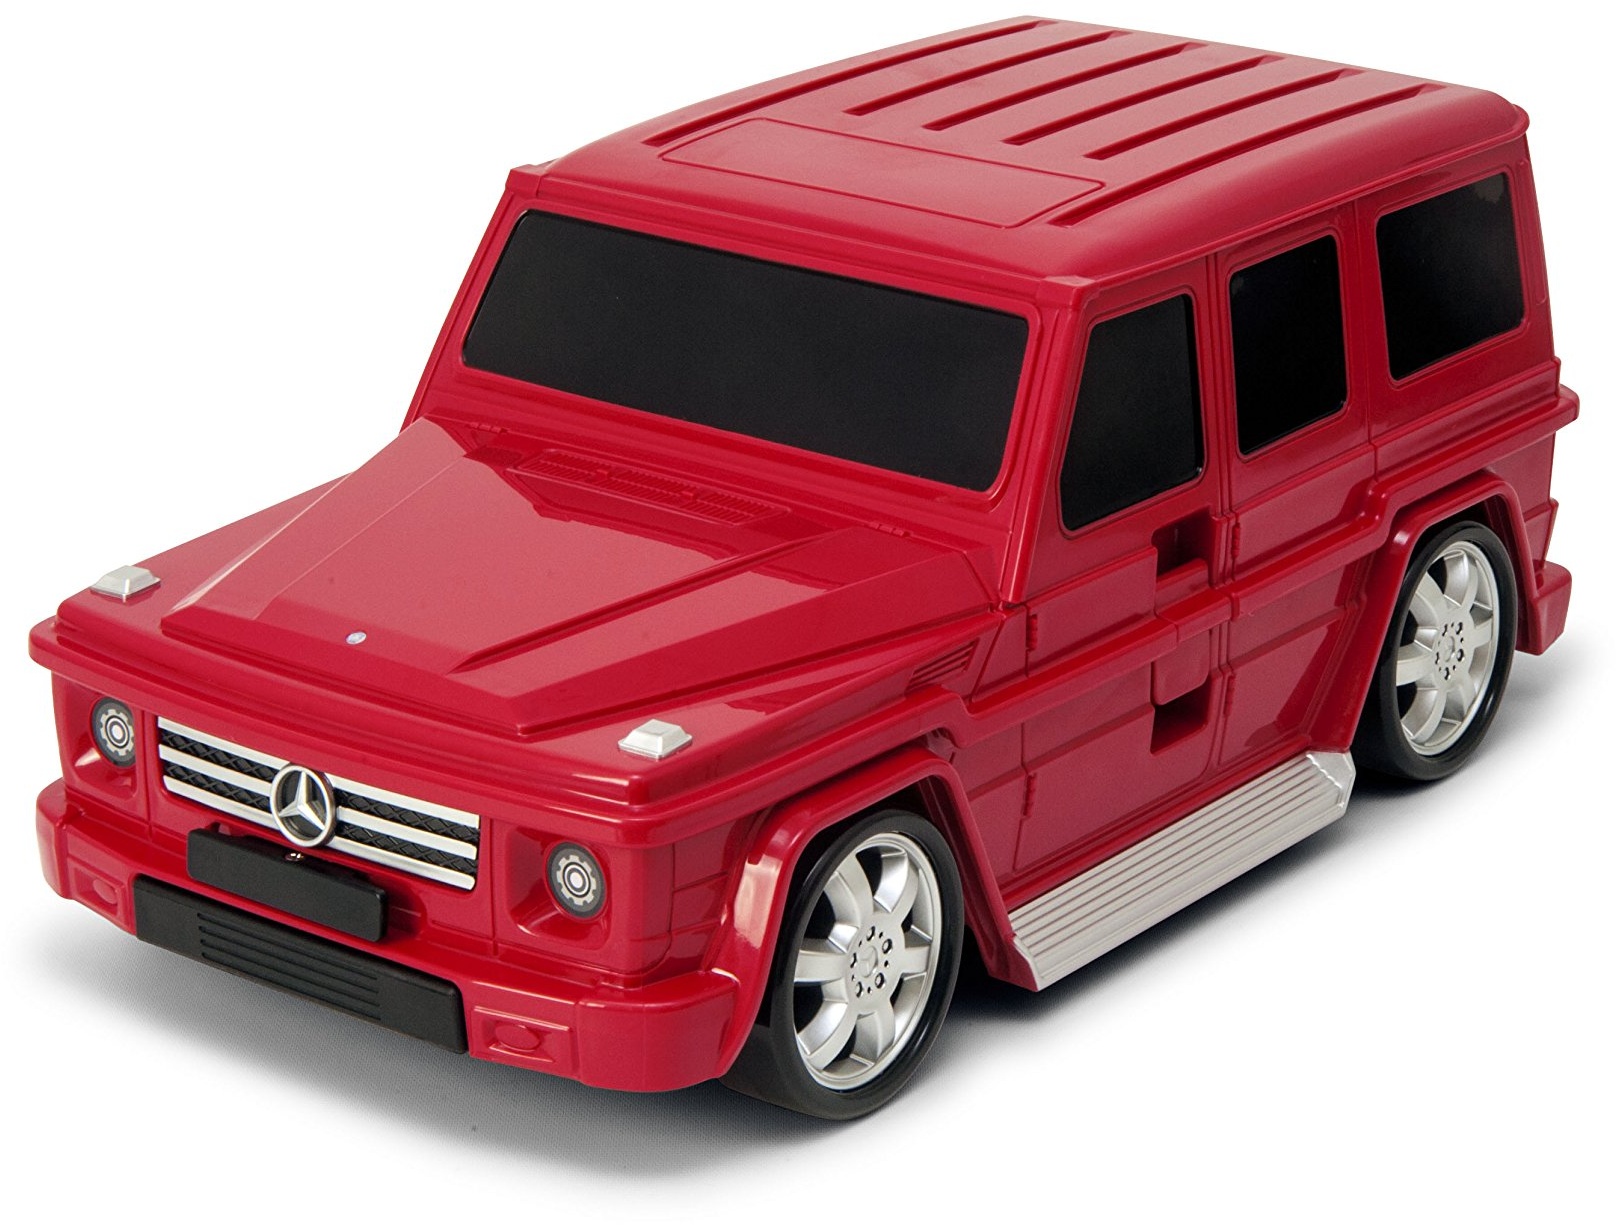 Packenger Kinderkoffer - Mercedes G-Klasse - Original Mercedes Benz Lizenzprodukt, Rot, Auto, Bordcase, Koffer mit Teleskopstange und Ziehgurt